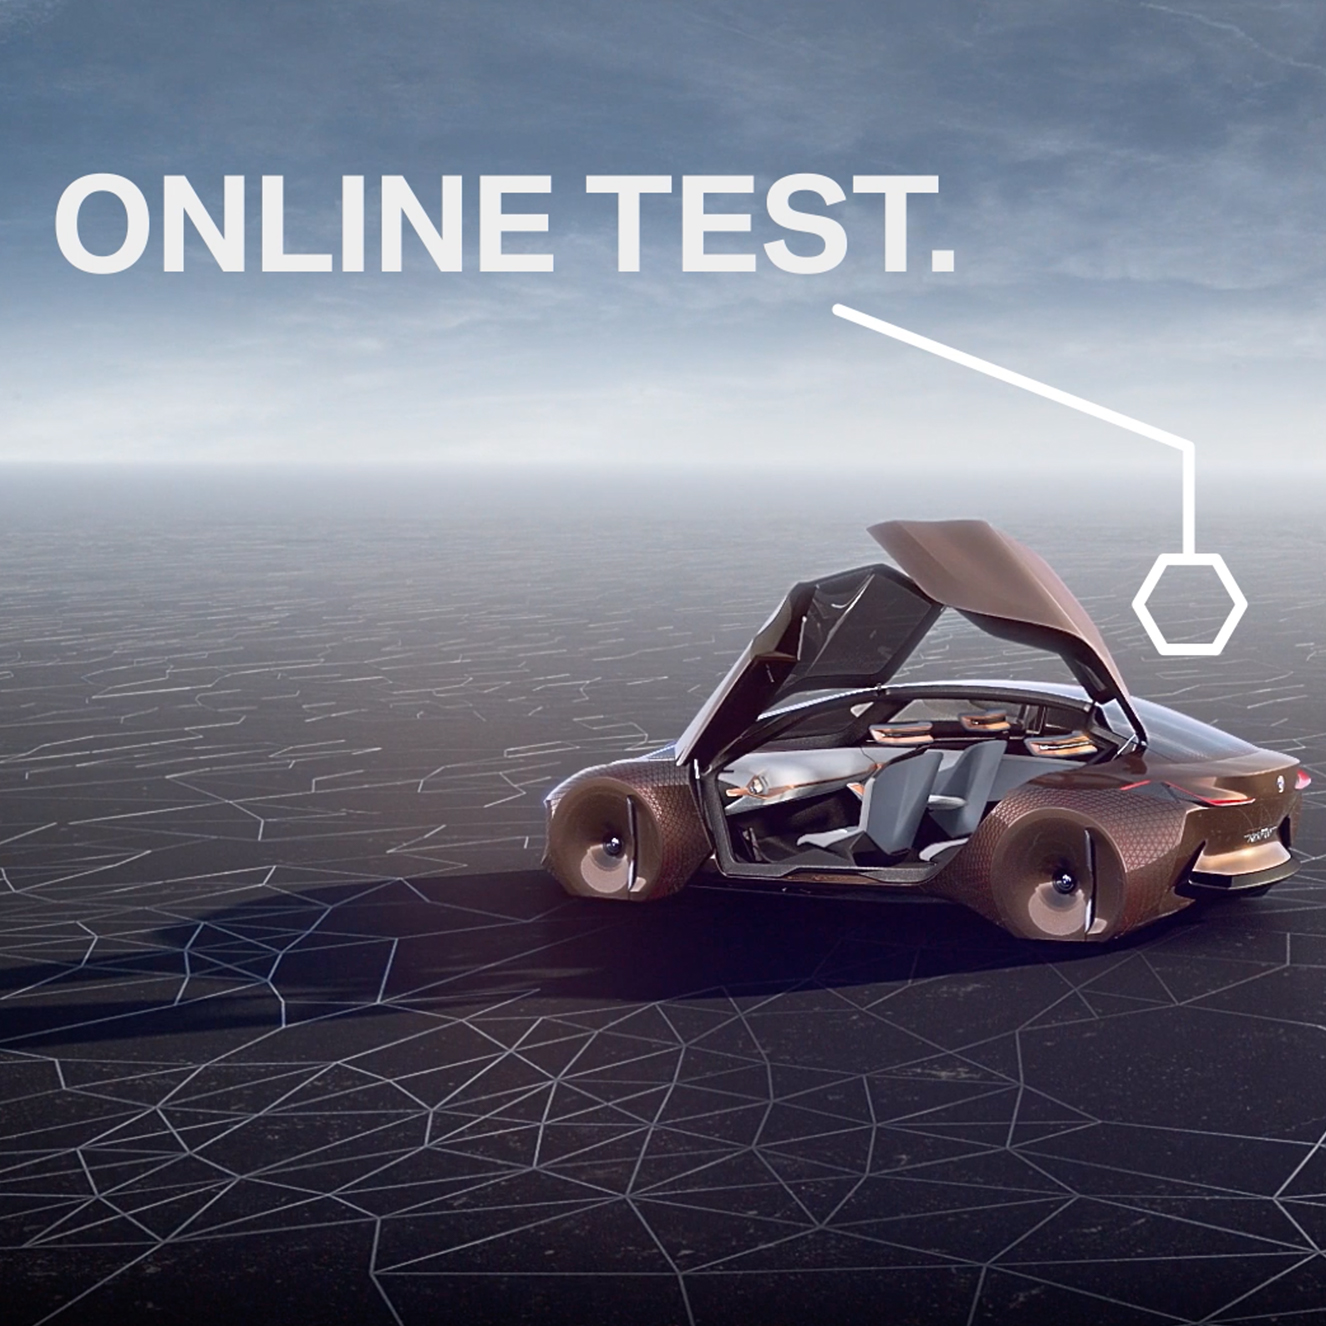 Standbild des Clip "Online Test"